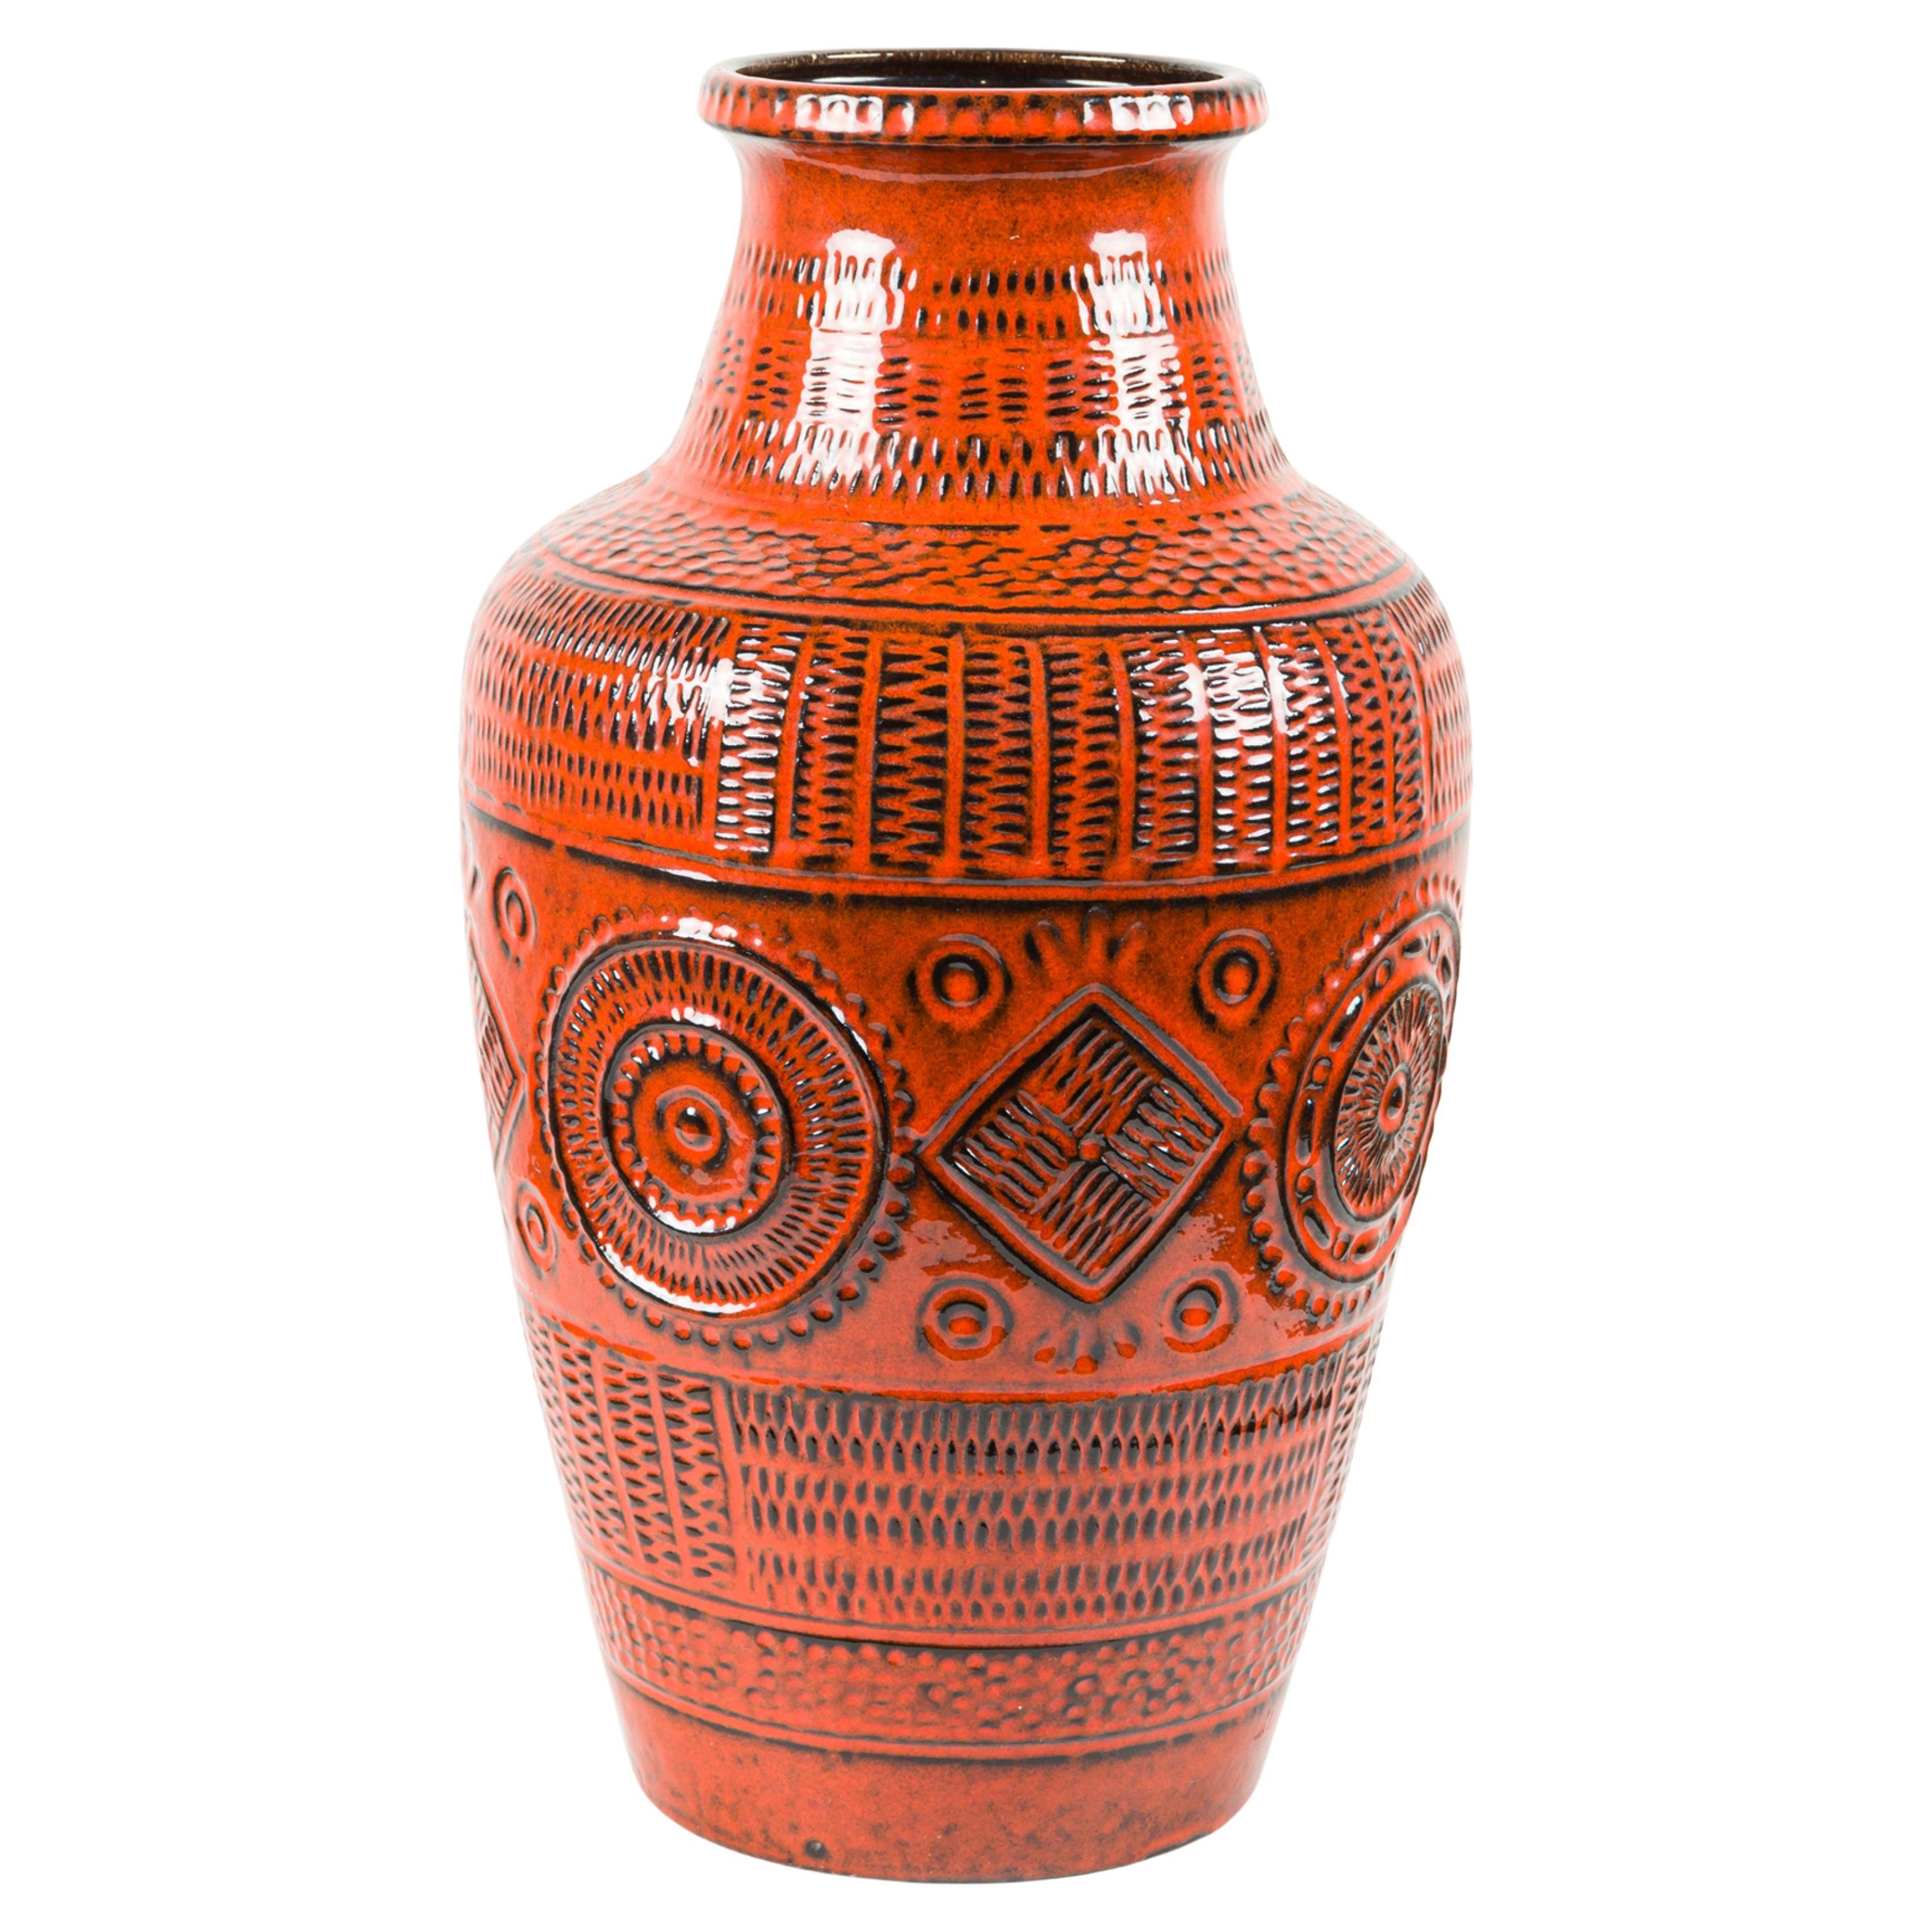 Vase en céramique noire et orange de la région de la baie de Keramik, Allemagne de l'Ouest, milieu du siècle dernier